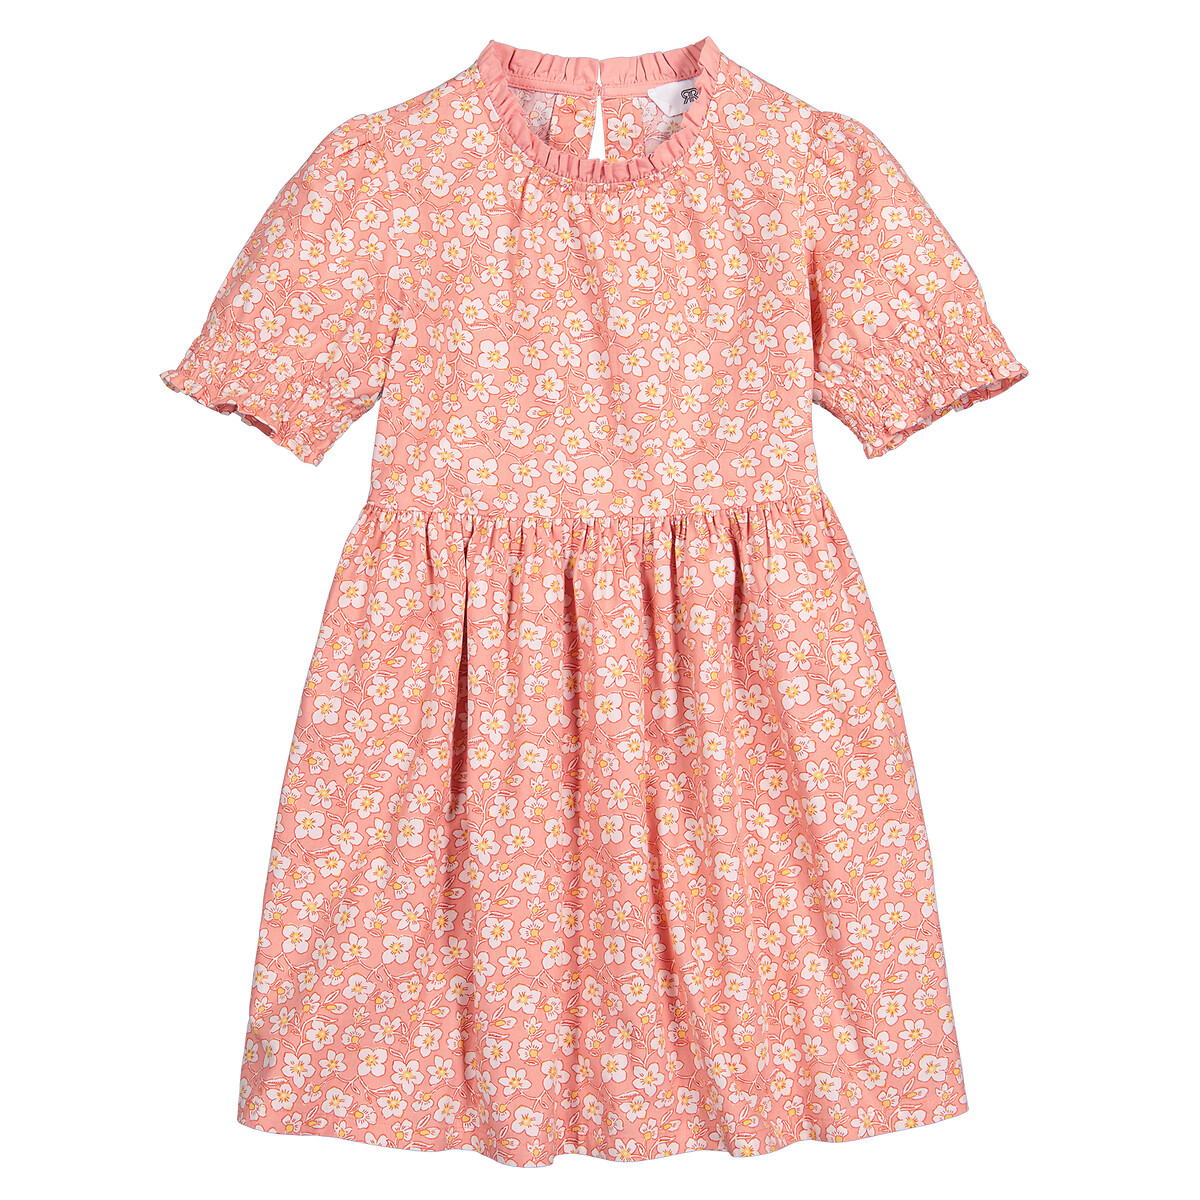 Платье С короткими рукавами и принтом цветы 12 лет -150 см розовый LaRedoute, размер 12 лет -150 см - фото 3